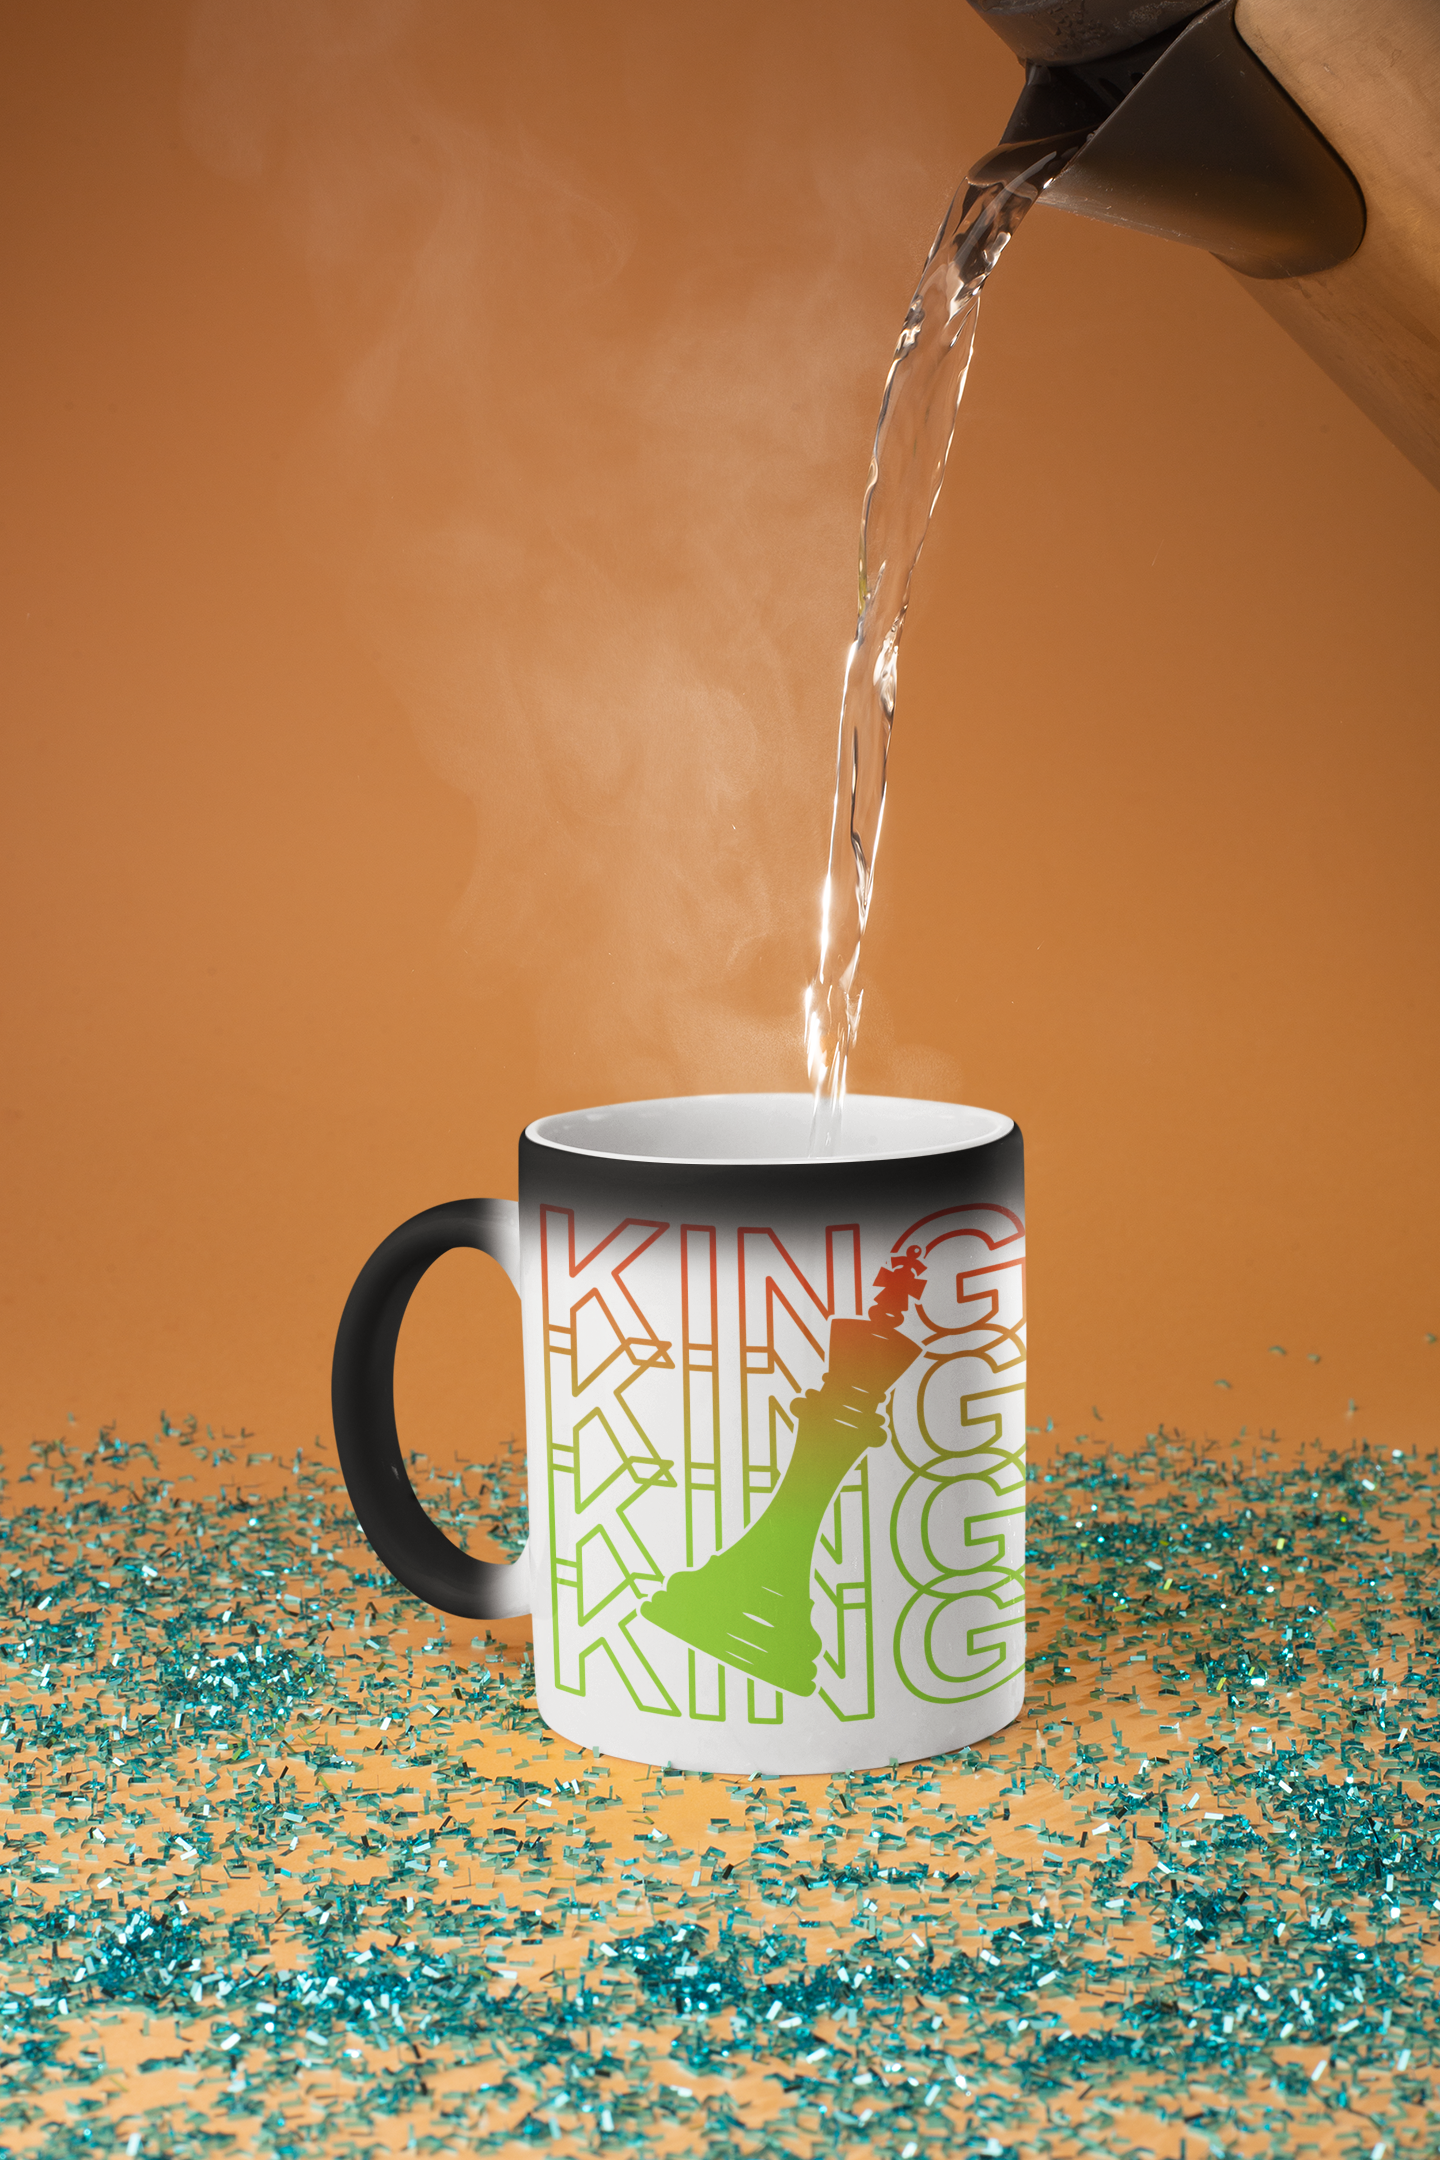 Magic mug – Kreative Jurni